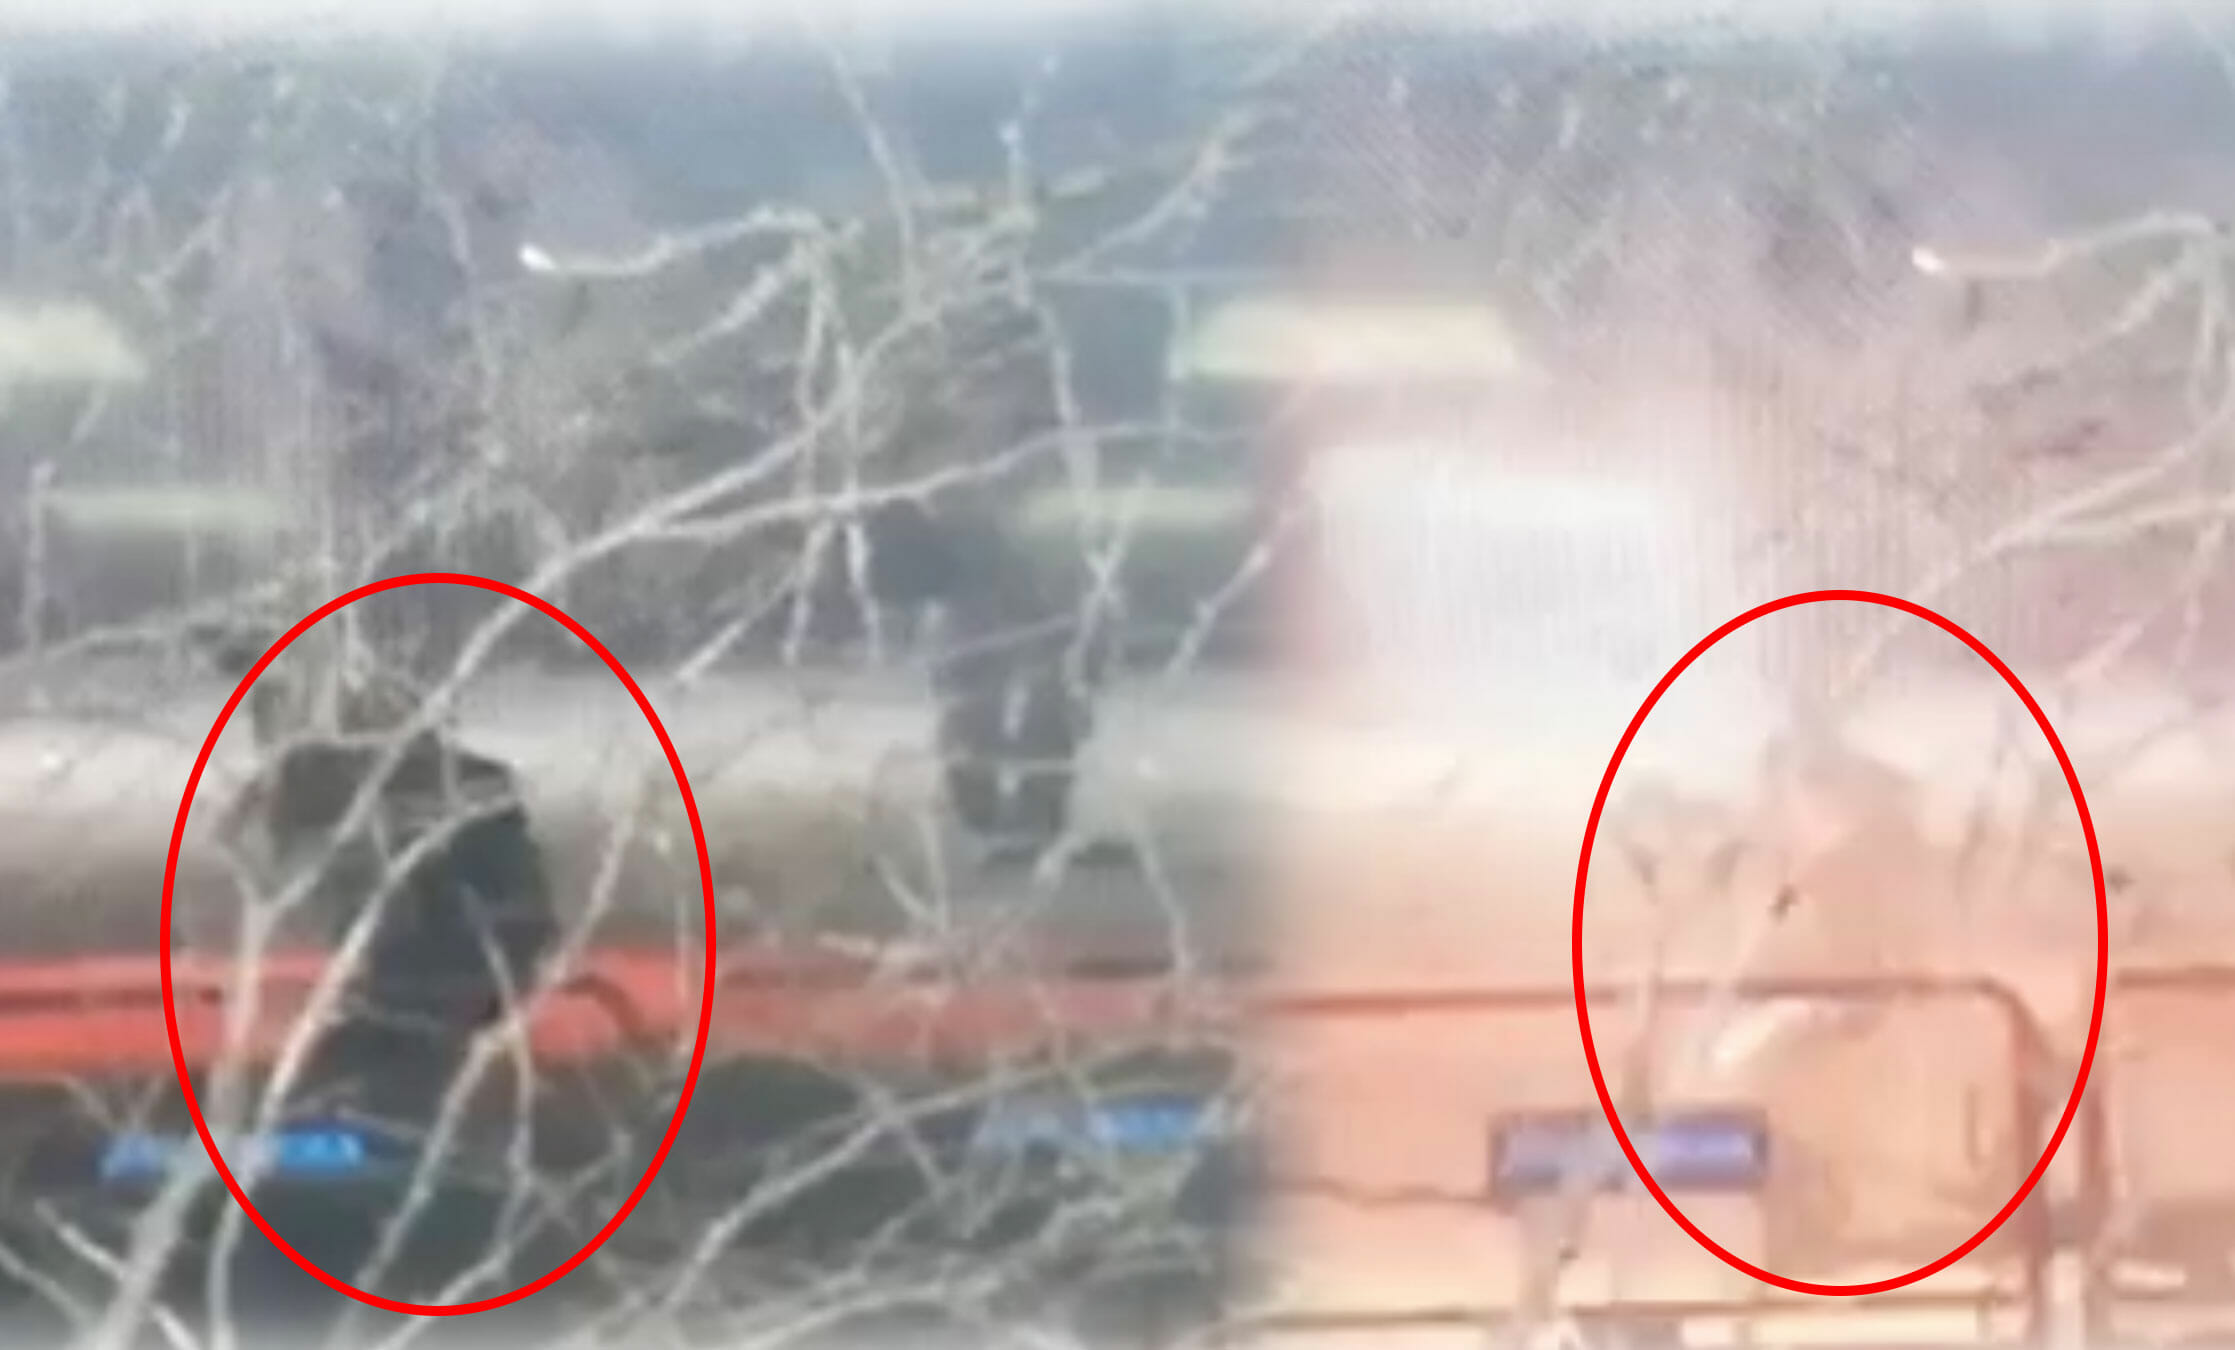 Έβρος: Τούρκος ένστολος φτάνει στον φράχτη και πετά χημικά! Νέες εικόνες ντοκουμέντο